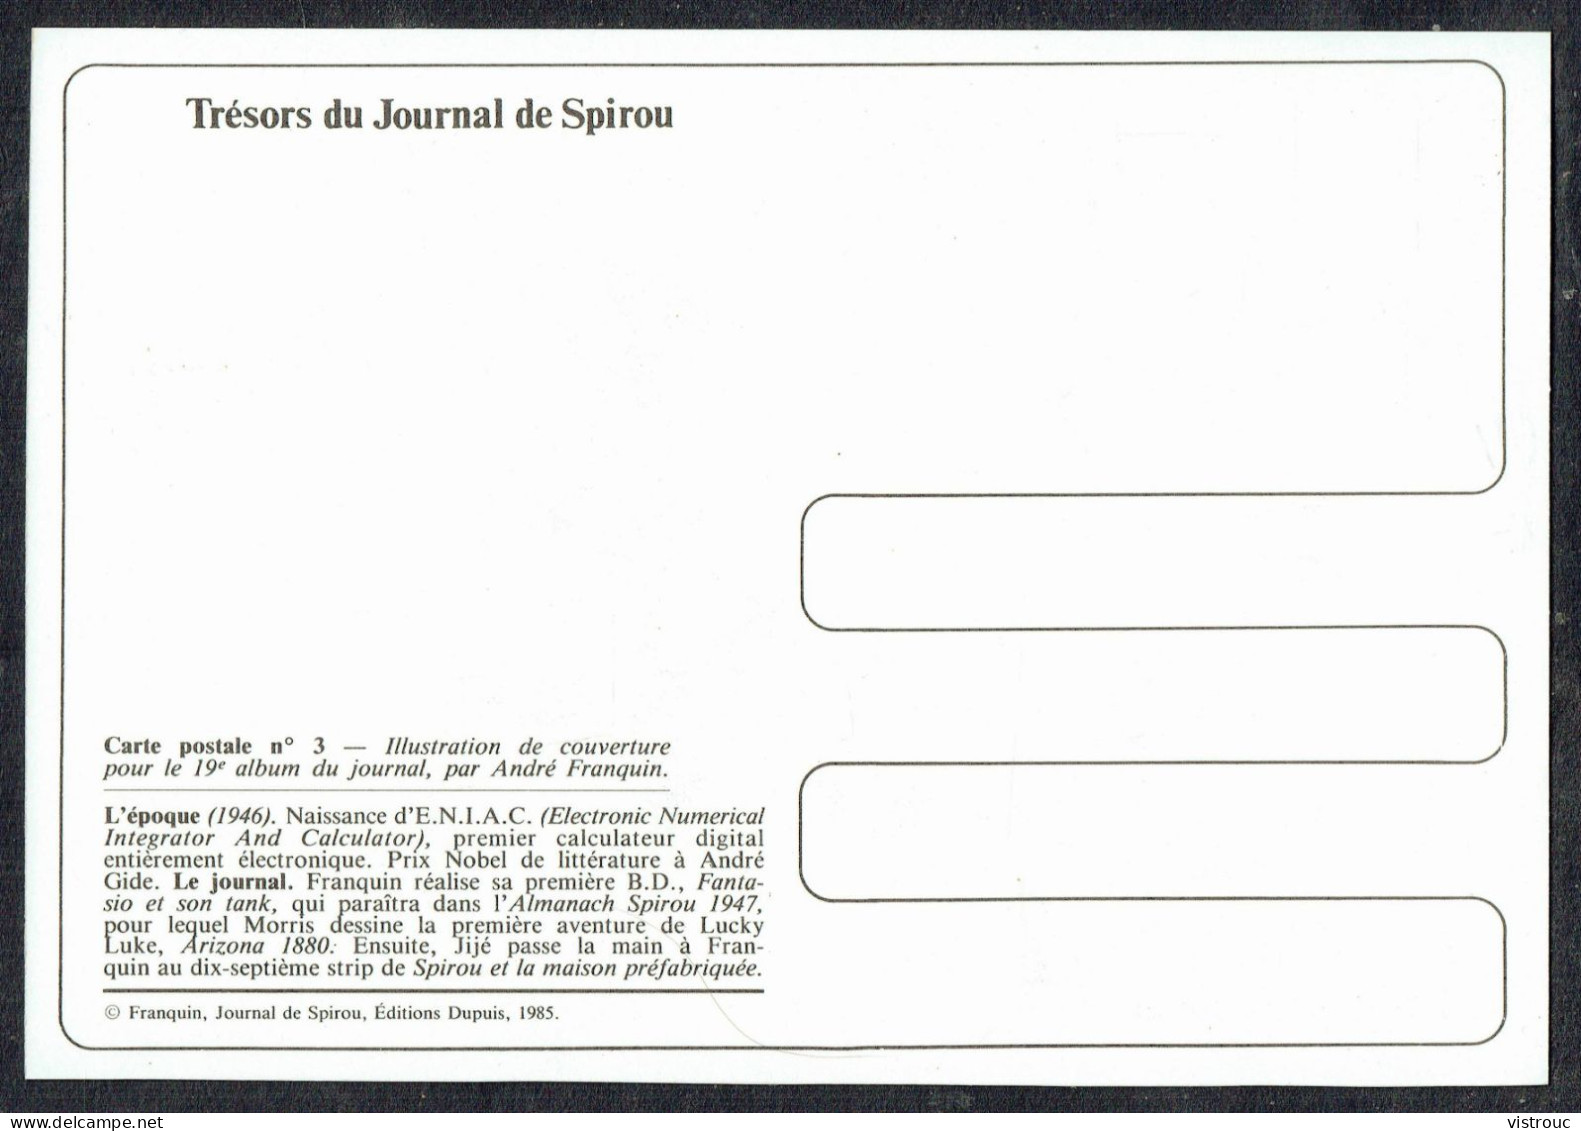 SPIROU - CP N° 3 : Illustration Couverture Album N° 19 De FRANQUIN - Non Circulé - Not Circulated - Ed. DUPUIS - 1985. - Bandes Dessinées